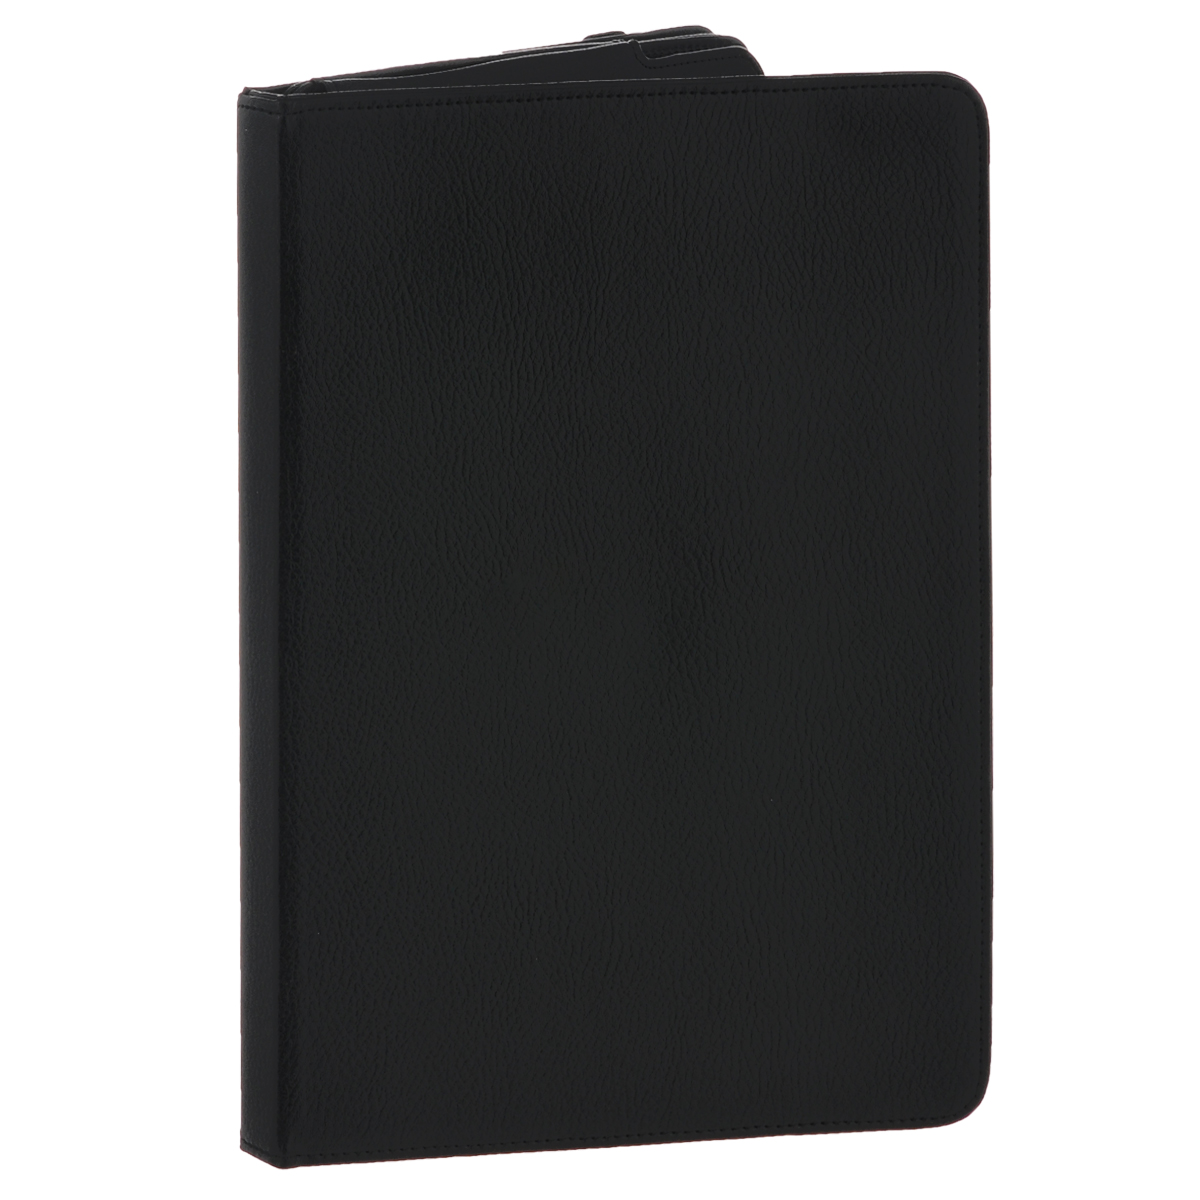 IT Baggage Link чехол для планшета Huawei MediaPad 10 Link, Black